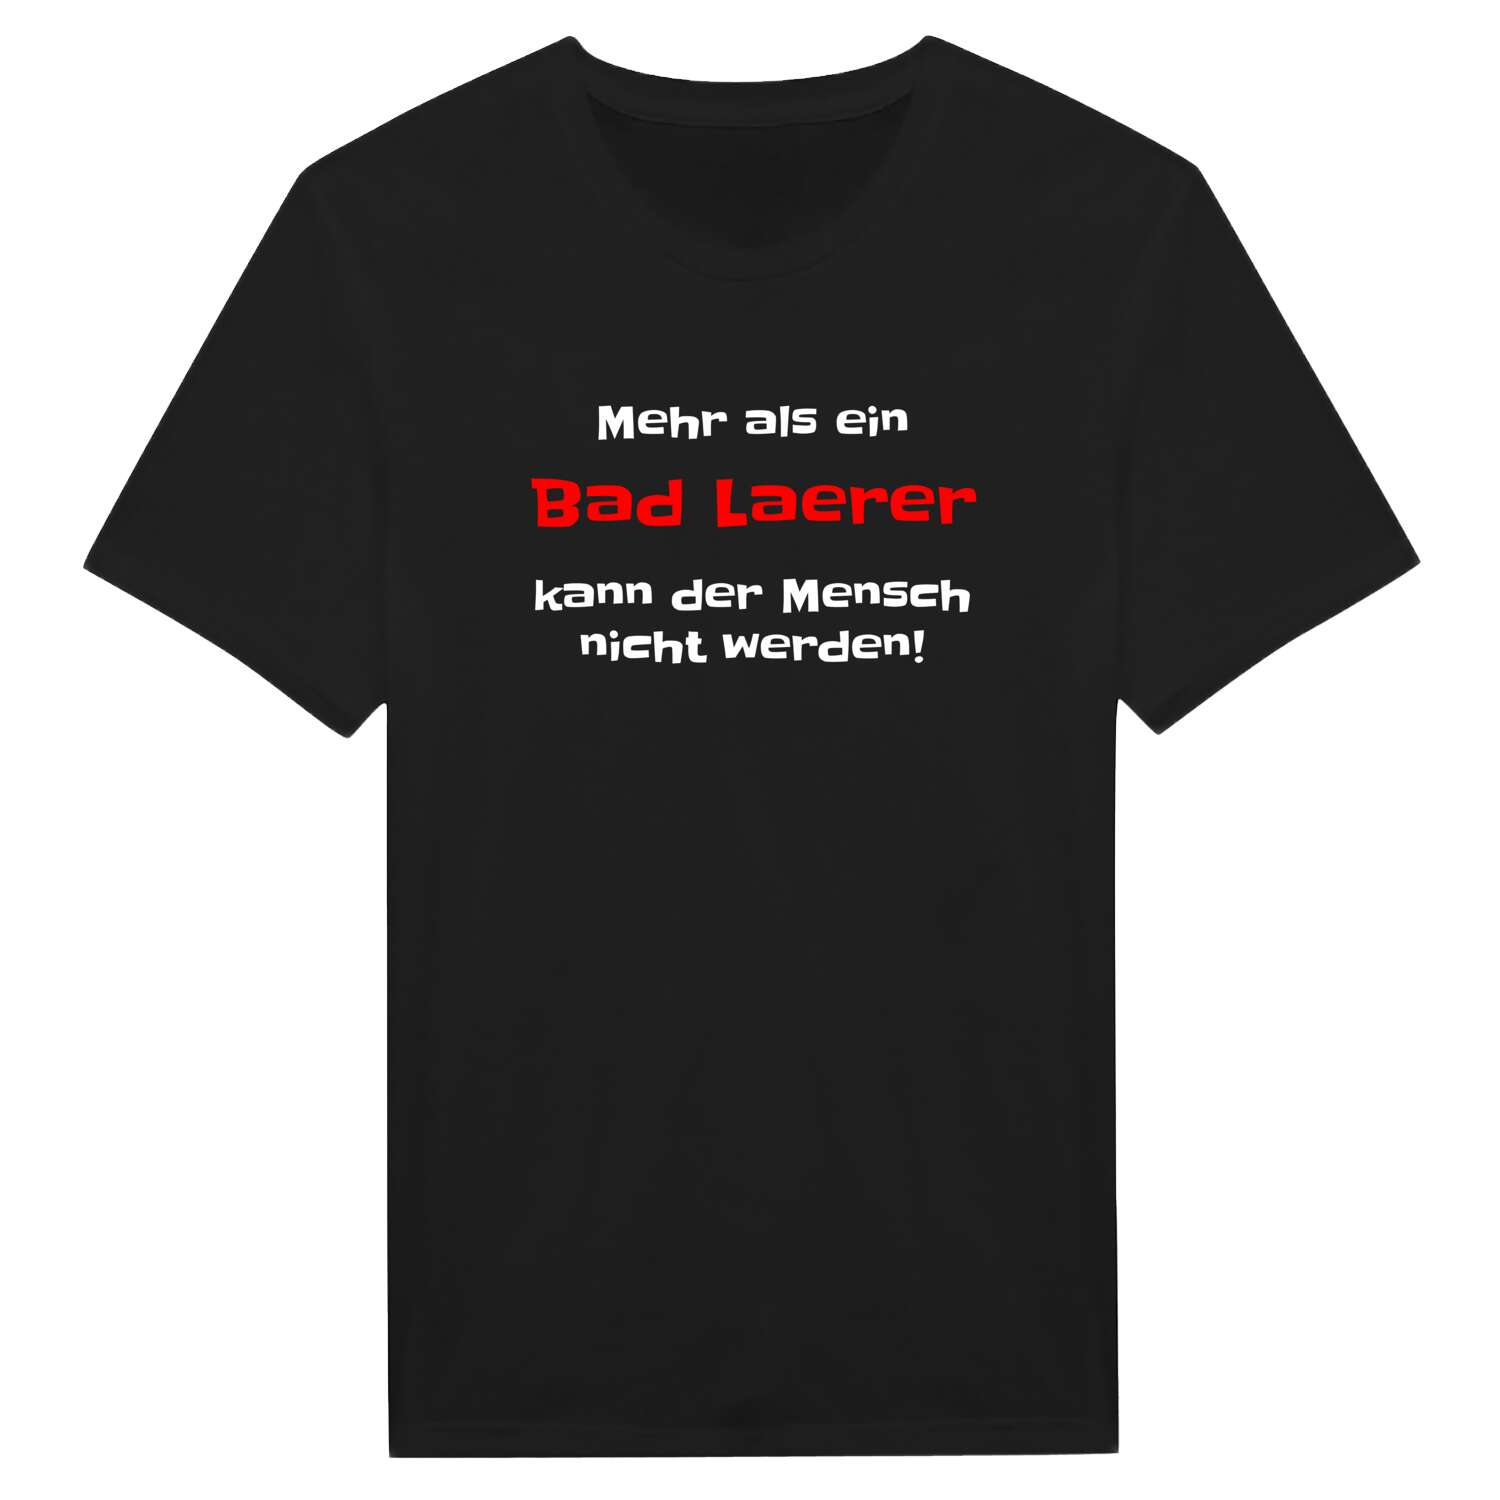 Bad Laer T-Shirt »Mehr als ein«